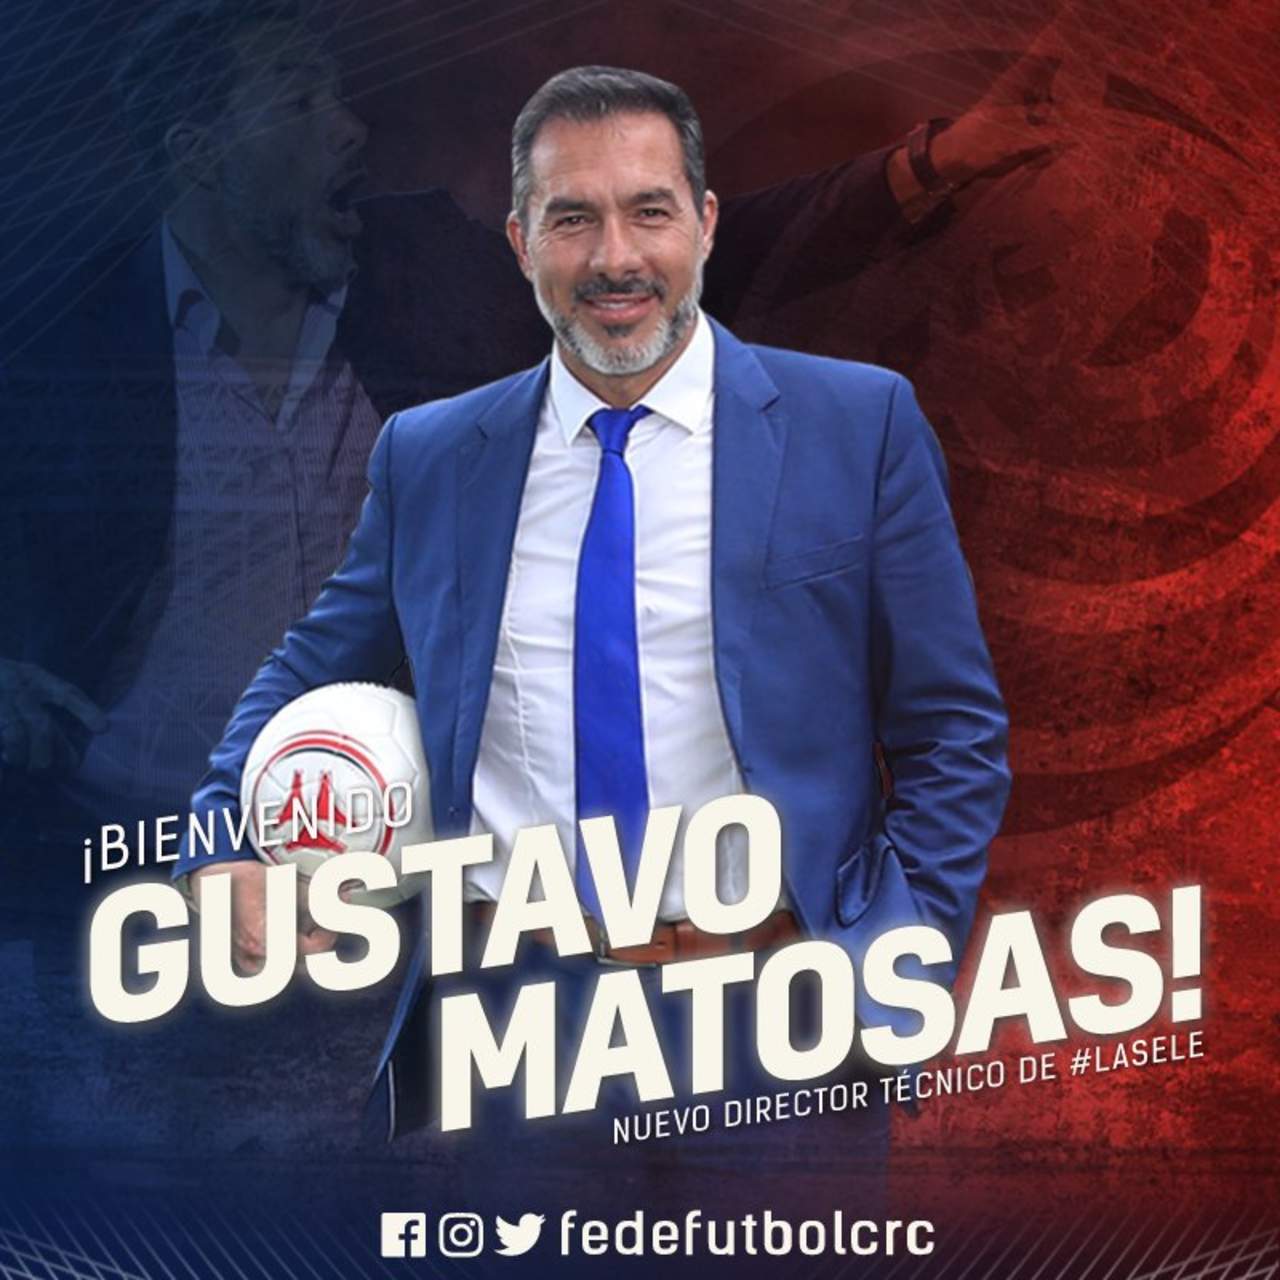 Matosas llegó a Costa Rica el pasado domingo y sostuvo negociaciones con la Federación este lunes y martes, en las cuales las partes llegaron a un acuerdo. (Especial)